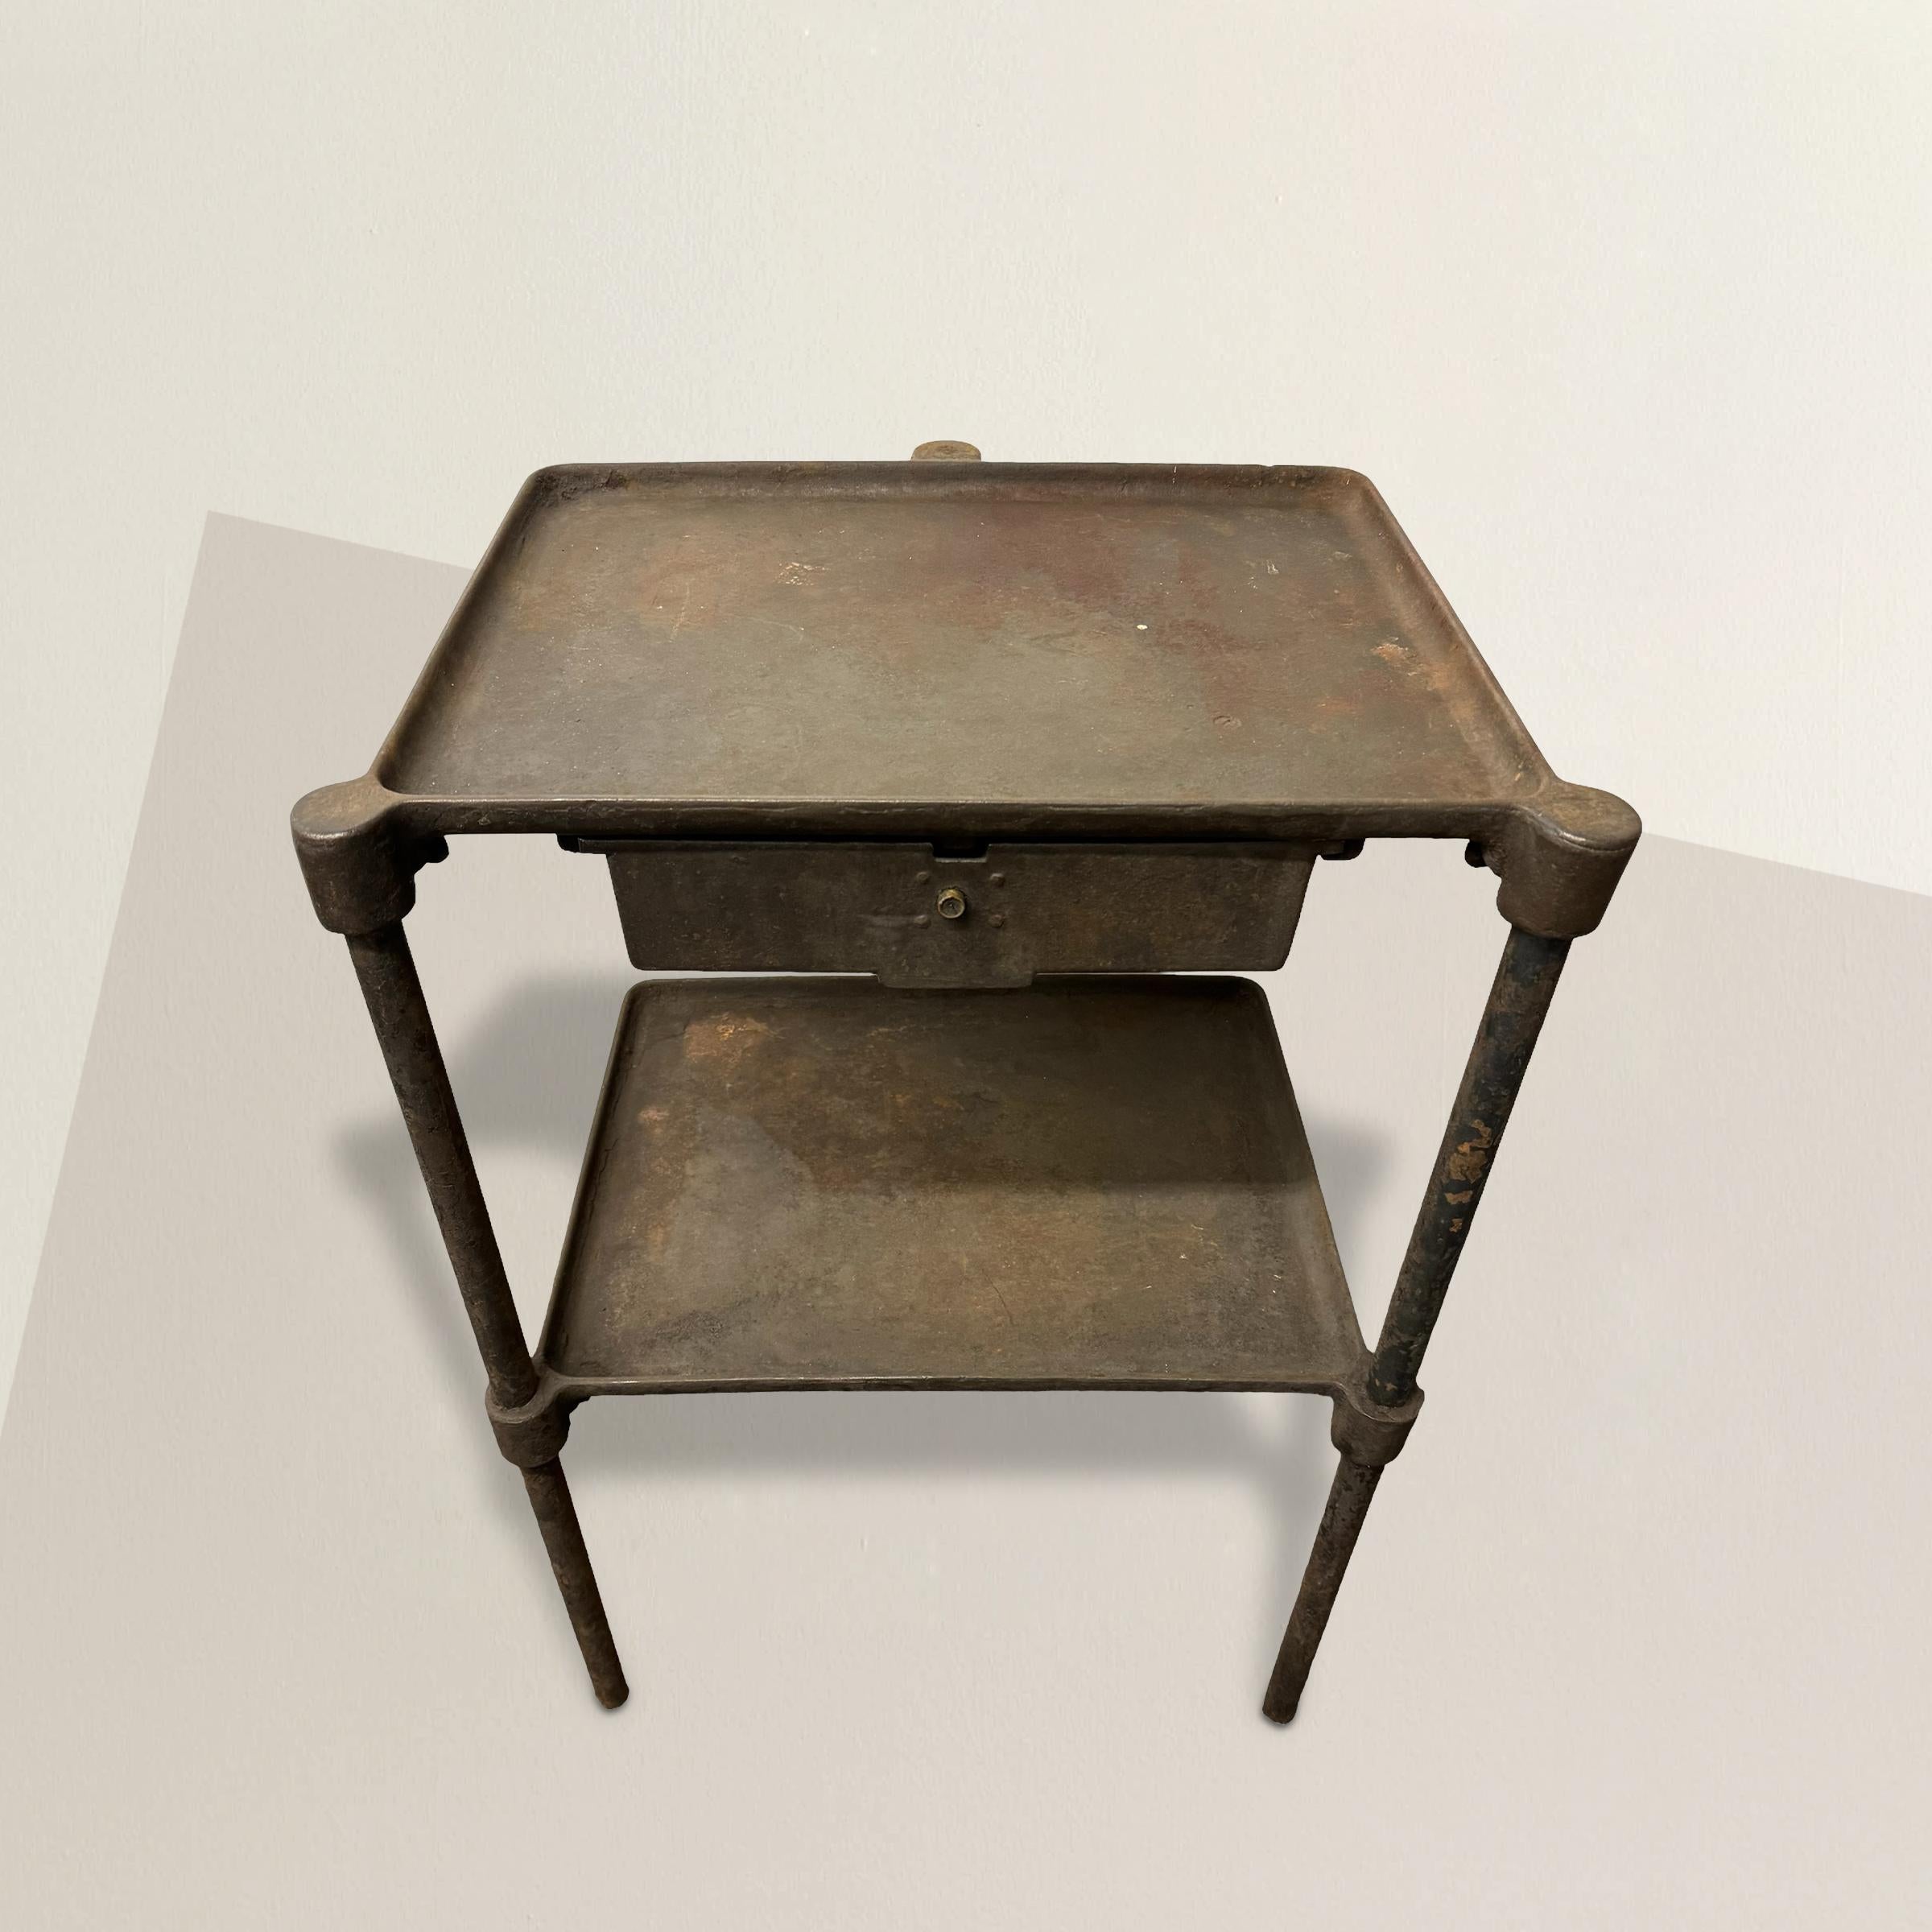 Dieser Tisch aus amerikanischem Industriestahl aus dem frühen 20. Jahrhundert verkörpert die rohe Funktionalität und utilitaristische Ästhetik des Industriedesigns. Mit drei stabilen Beinen, einer einzigen Schublade und einem Regal darunter ist